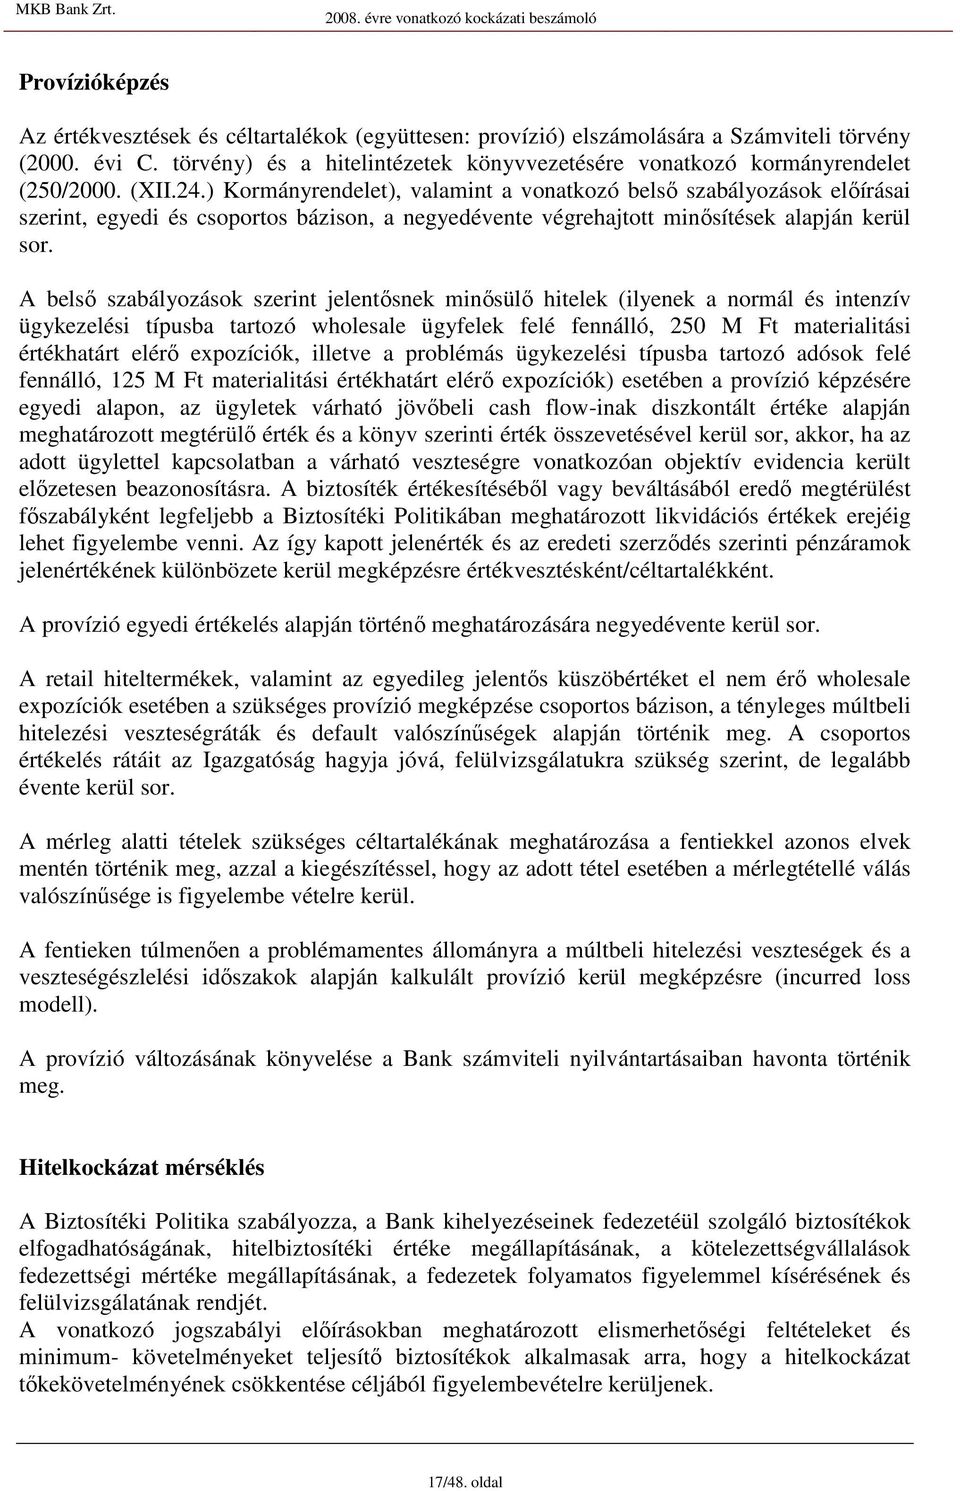 ) Kormányrendelet), valamint a vonatkozó belsı szabályozások elıírásai szerint, egyedi és csoportos bázison, a negyedévente végrehajtott minısítések alapján kerül sor.